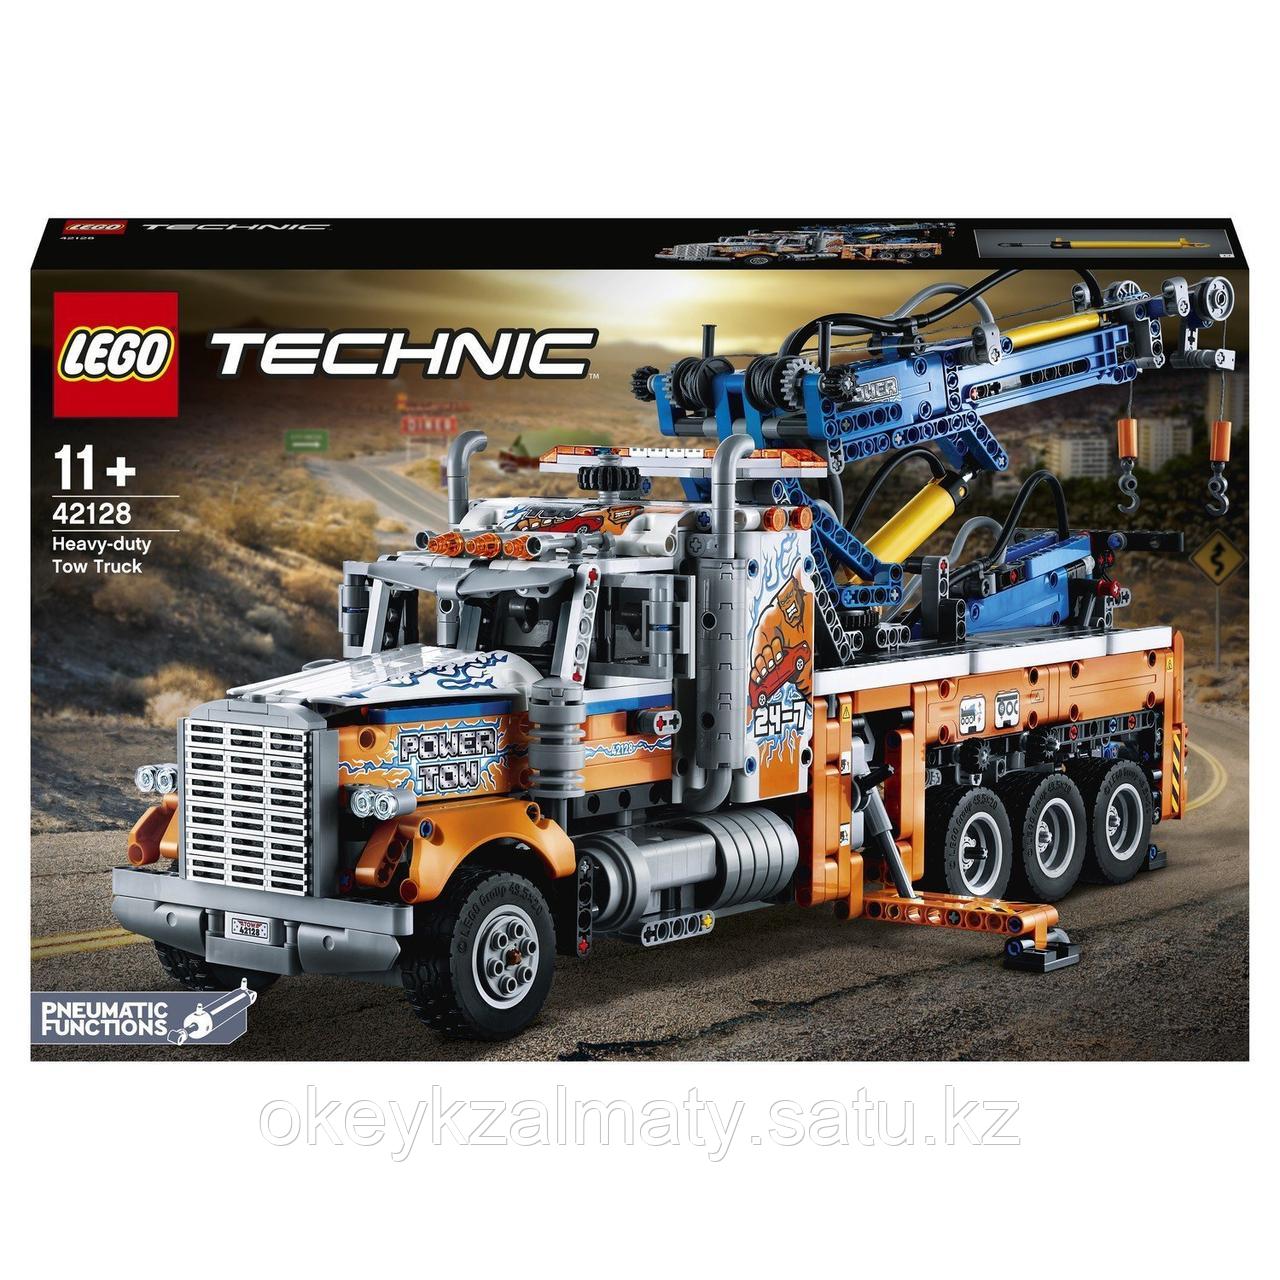 LEGO Technic: Грузовой эвакуатор 42128